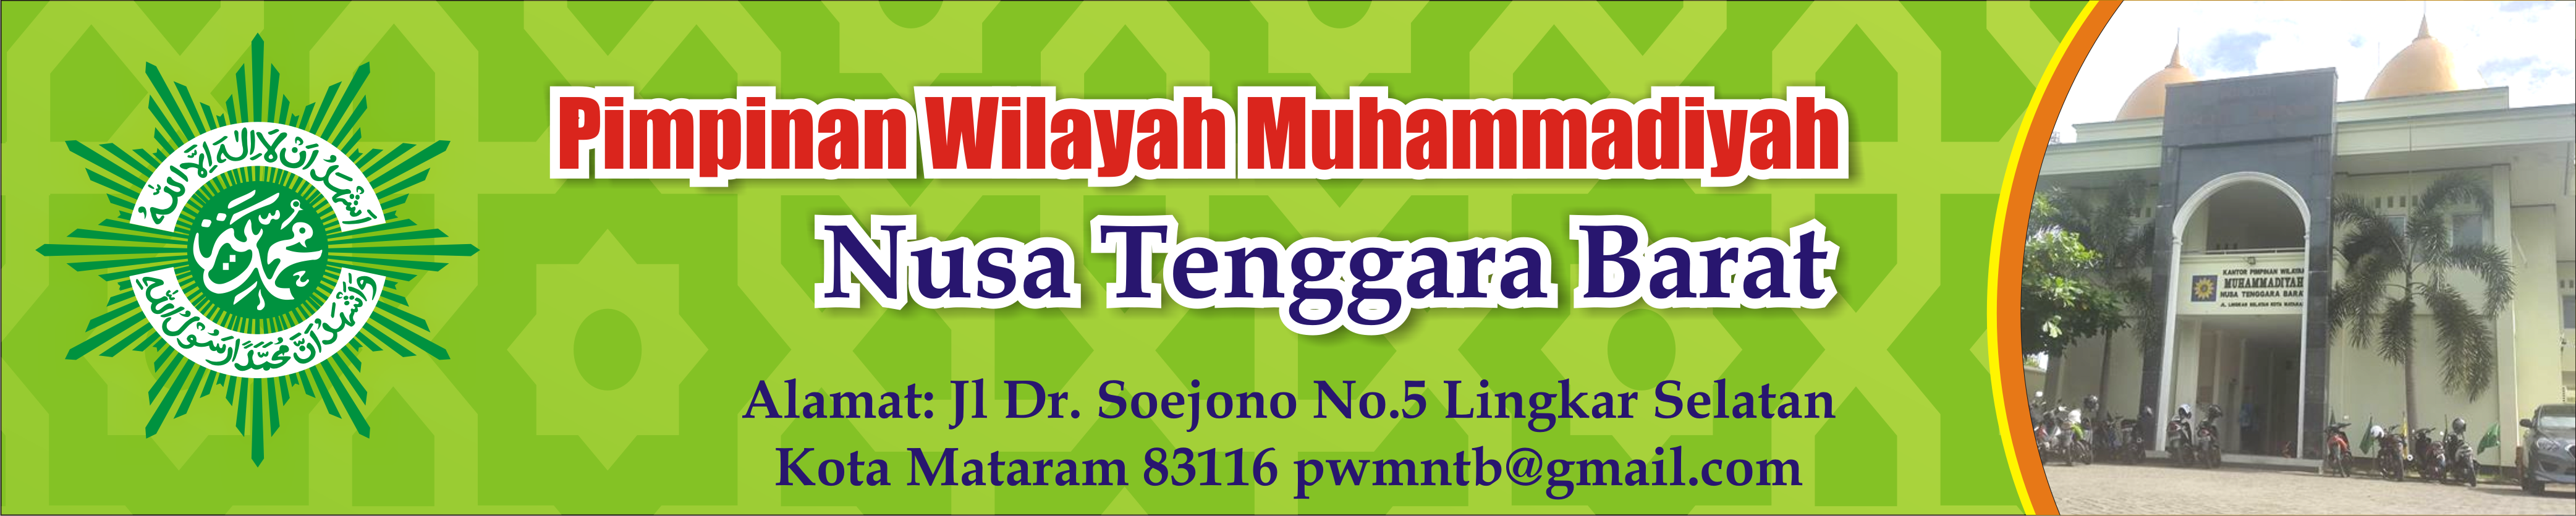 Lembaga Pengembangan Pesantren Pimpinan Wilayah Muhammadiyah Nusa Tenggara Barat